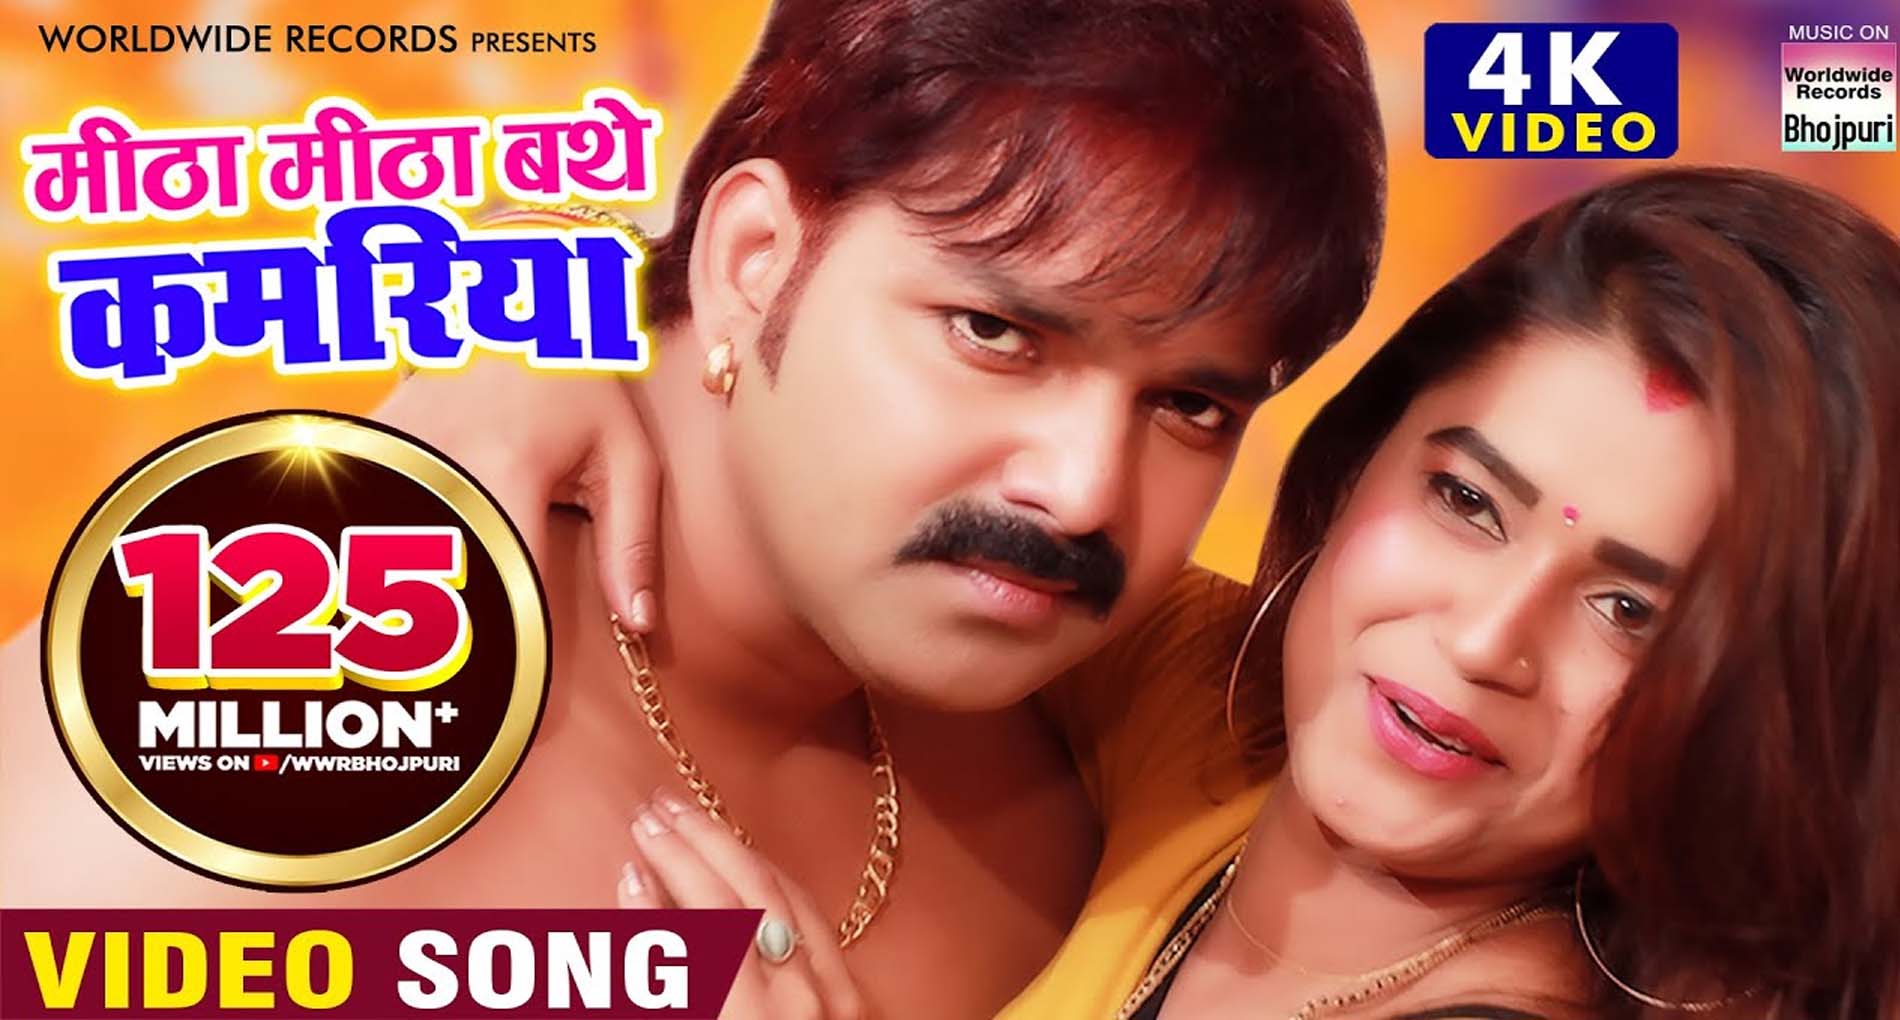 Pawan Singh Bhojpuri Song पवन सिंह के नए गाने का धमाल मिले 15 करोड़ व्यूज देखें वीडियो